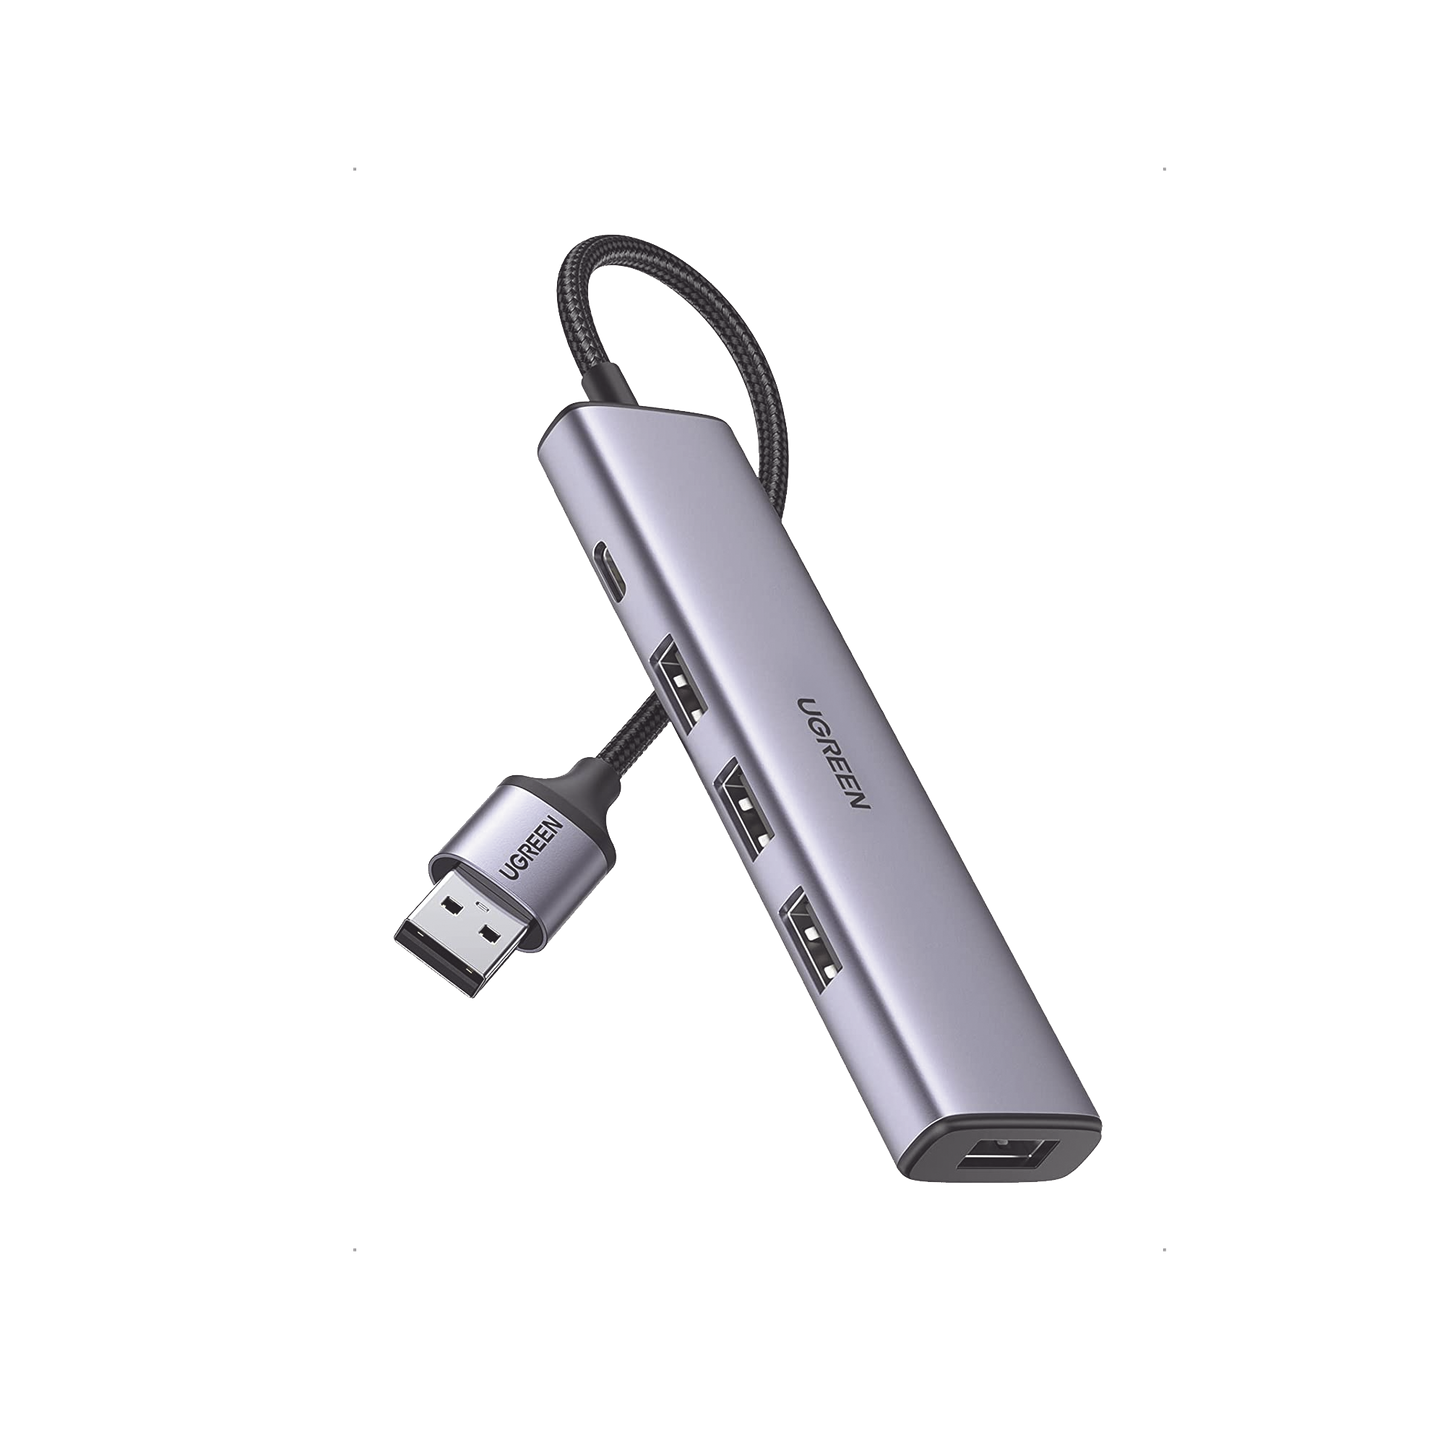 HUB USB-A 3.0 Multipuertos / 4 Puertos USB-A 3.0 (5Gbps) / Cable 20 cm / Ideal para Transferencia de Datos / Entrada Tipo C para alimentar equipos de mayor consumo como discos duros / 4 en 1 / Carcasa de Aluminio.